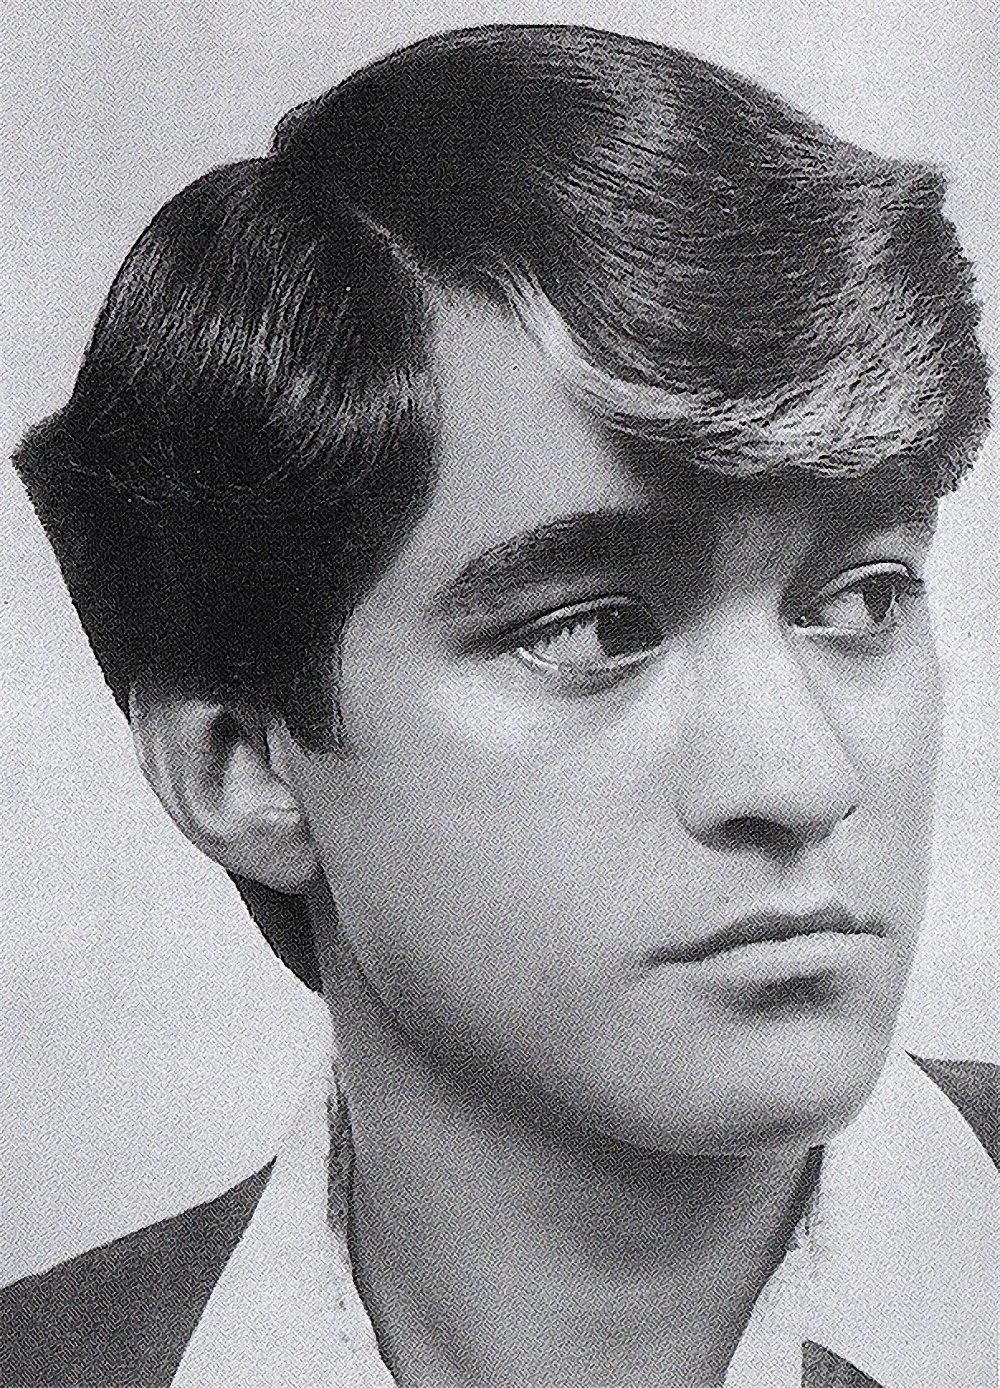 Мужские причёски 70-х годов в СССР